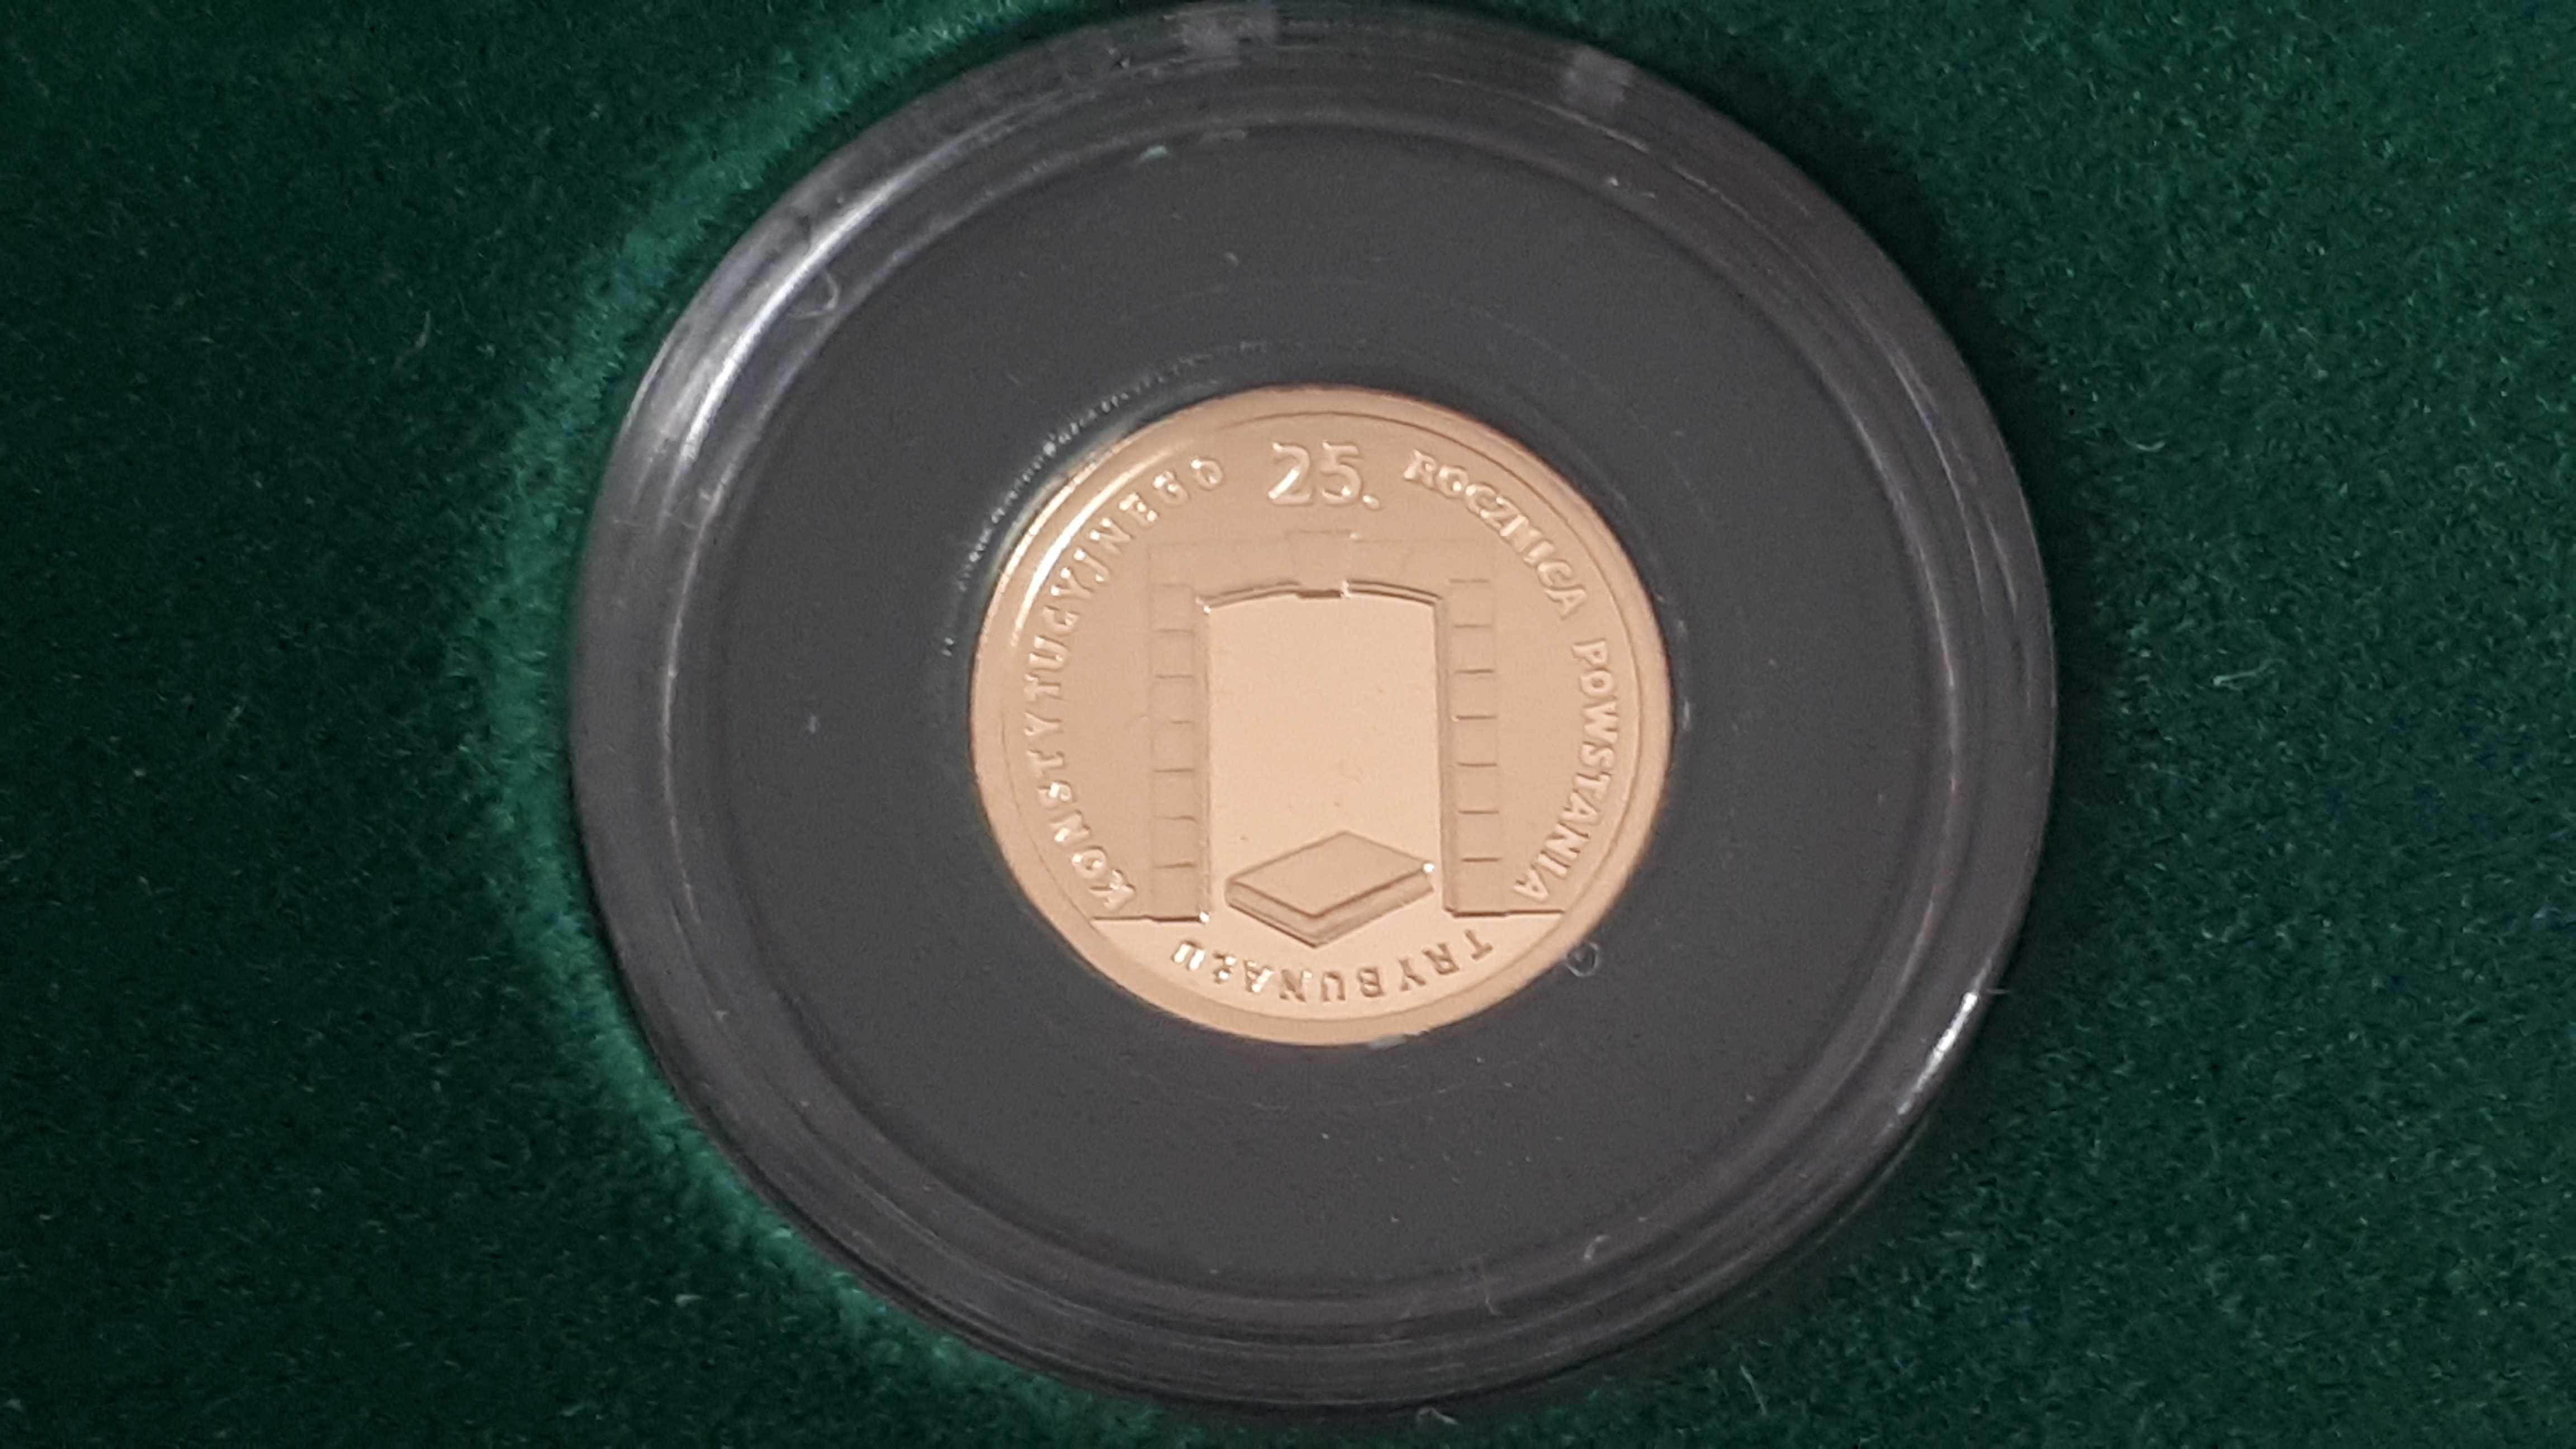 Złota Moneta - 25 rocznica Trybunału Konstytucyjnego, 2010, 25 zł